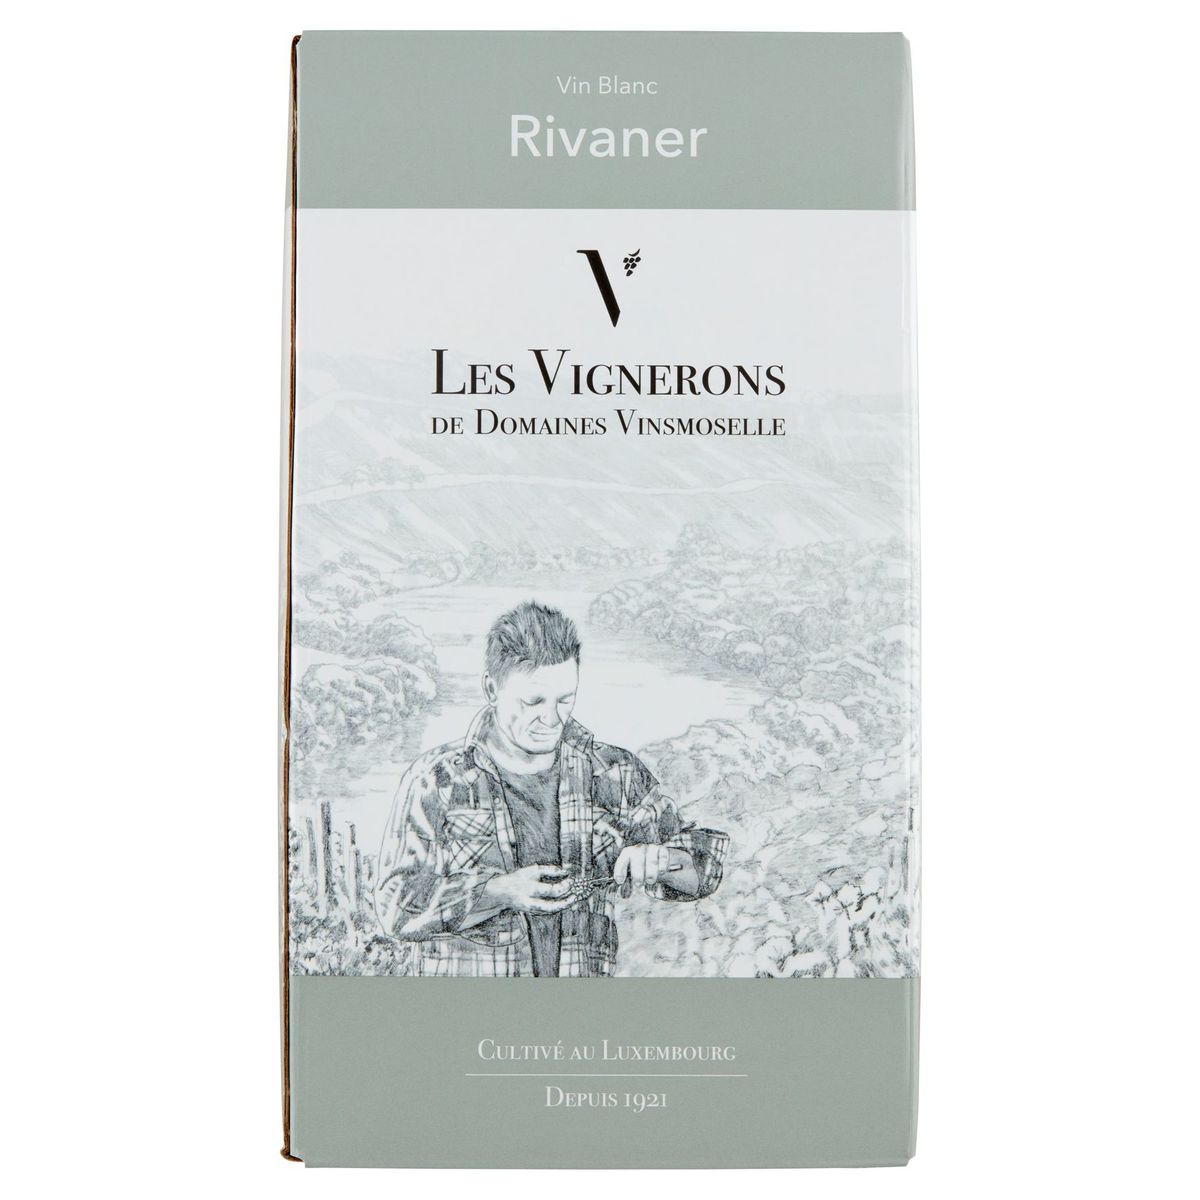 Luxemburg Les Vignerons des Domaines Vinsmoselle Witte wijn Rivaner 3L